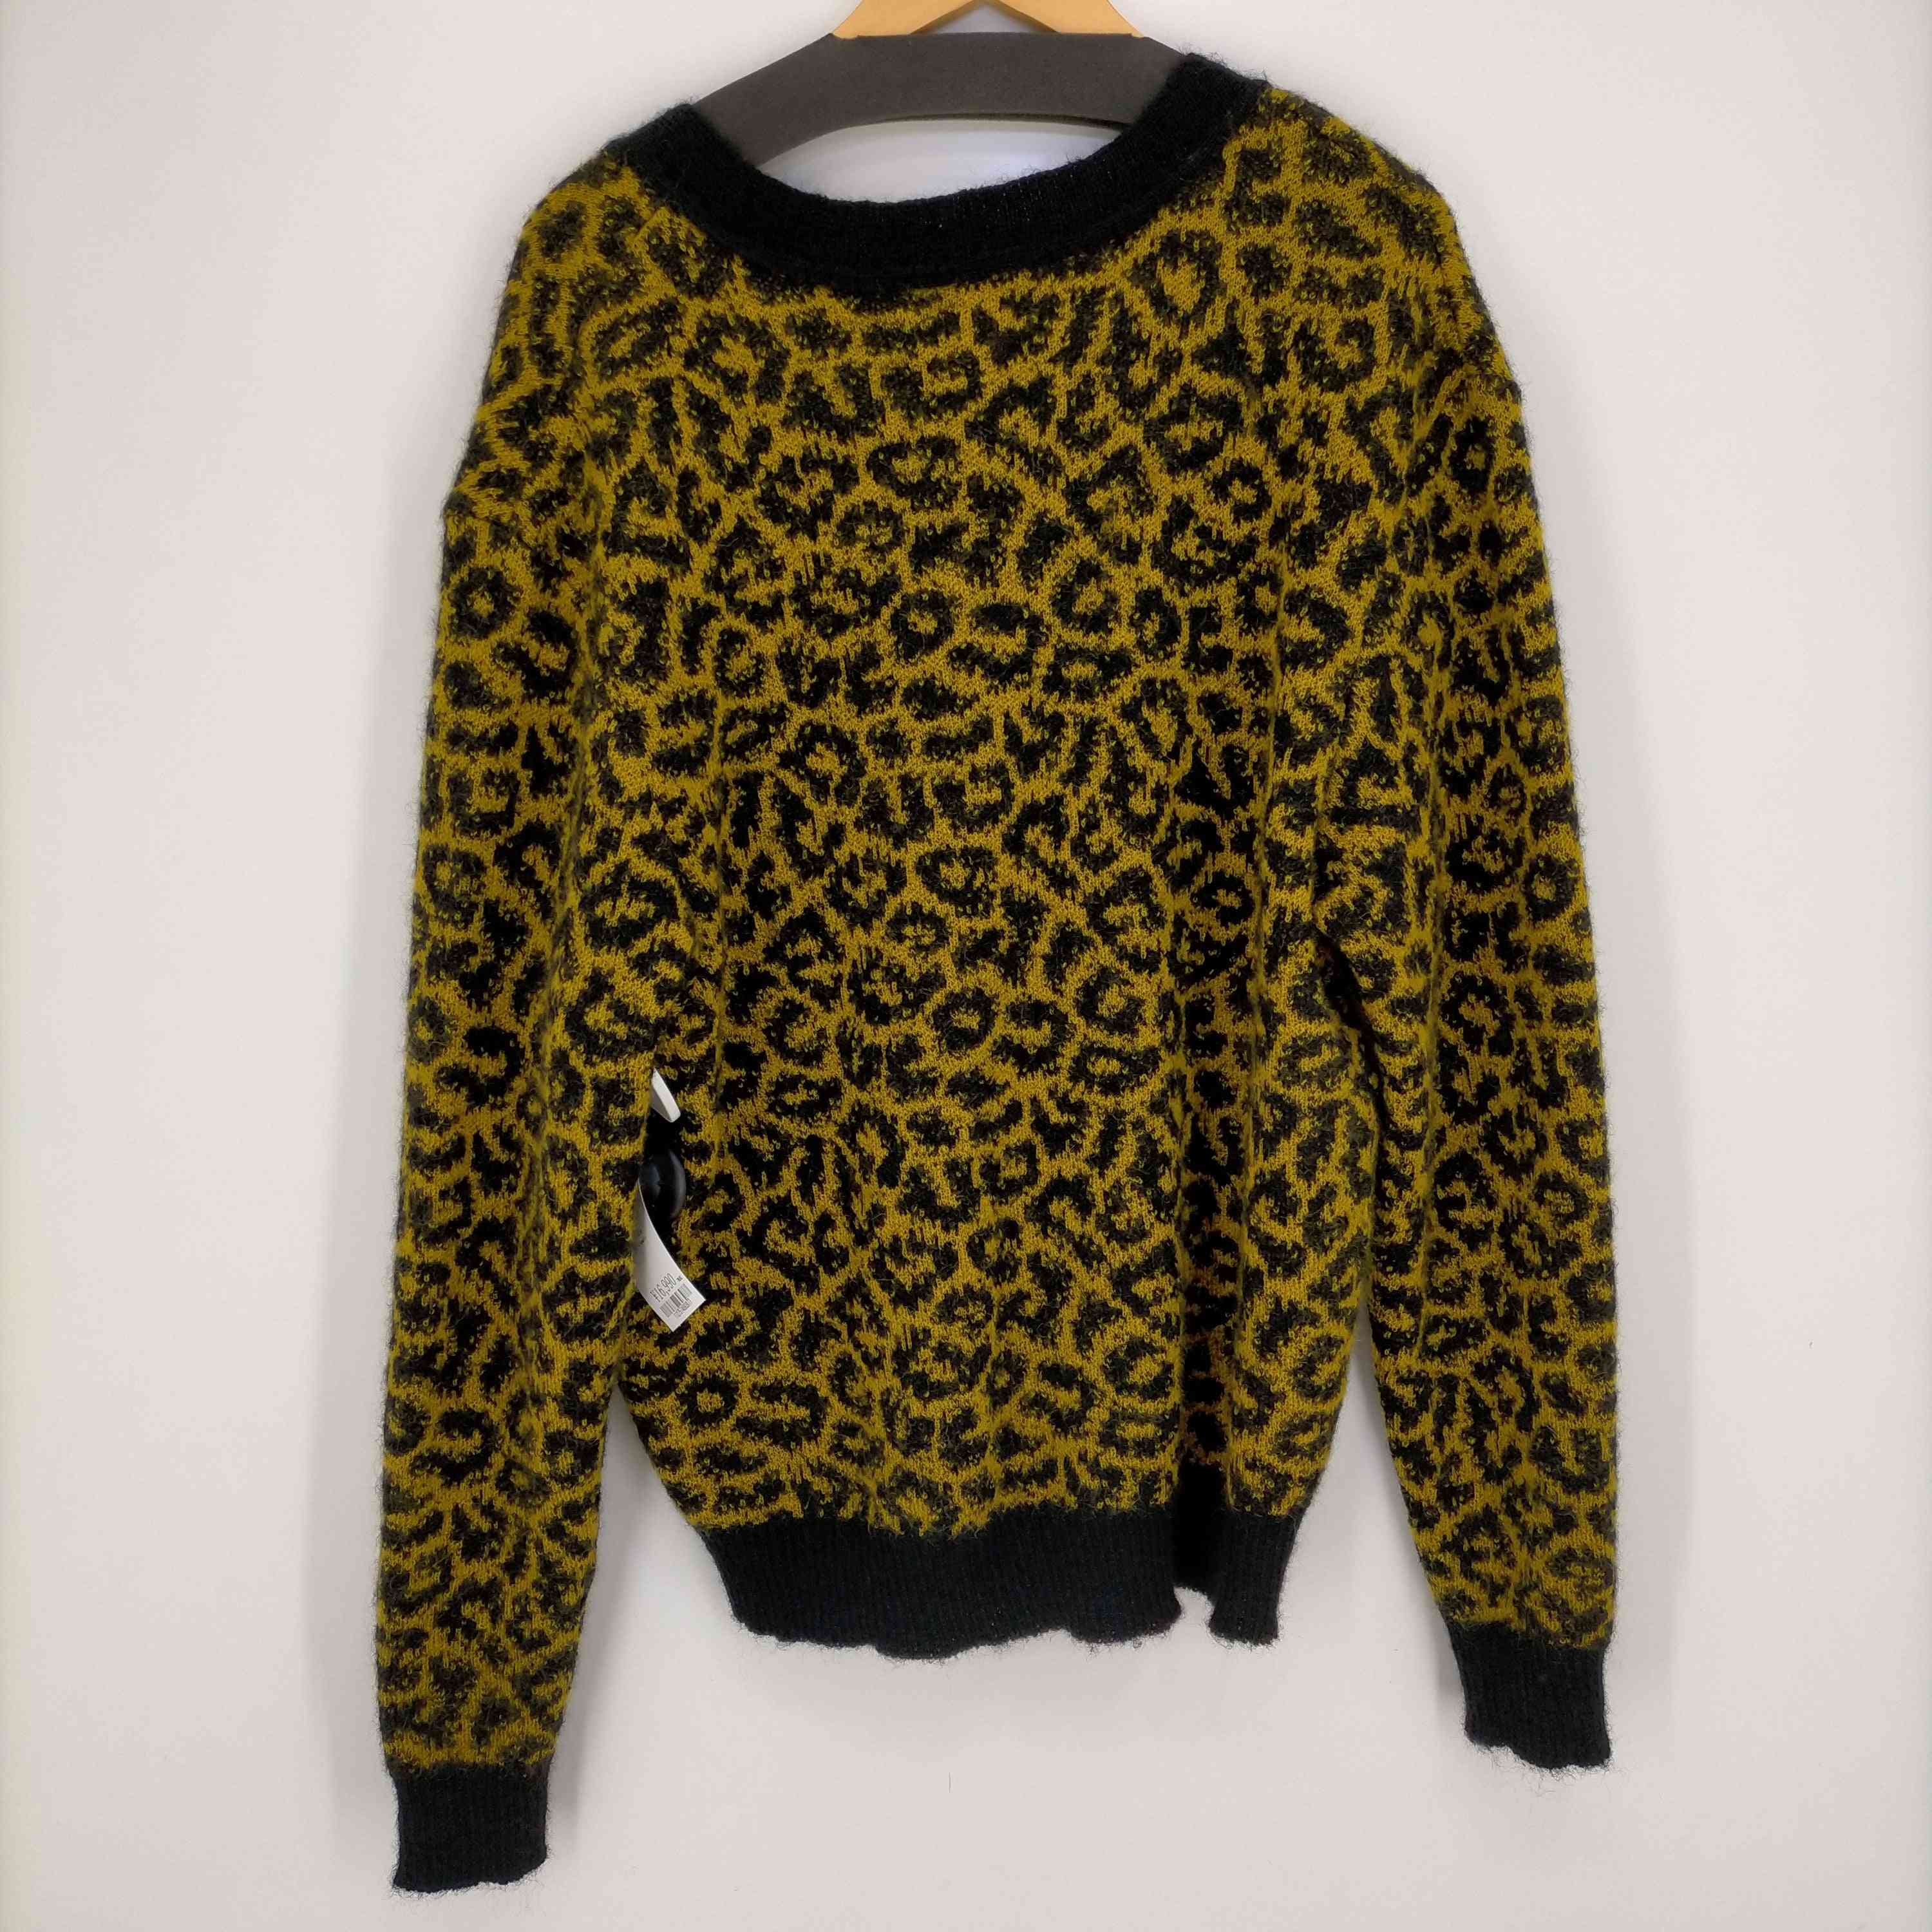 マイン MYne Leopard Knit メンズ FREE – ブランド古着買取販売バズストア